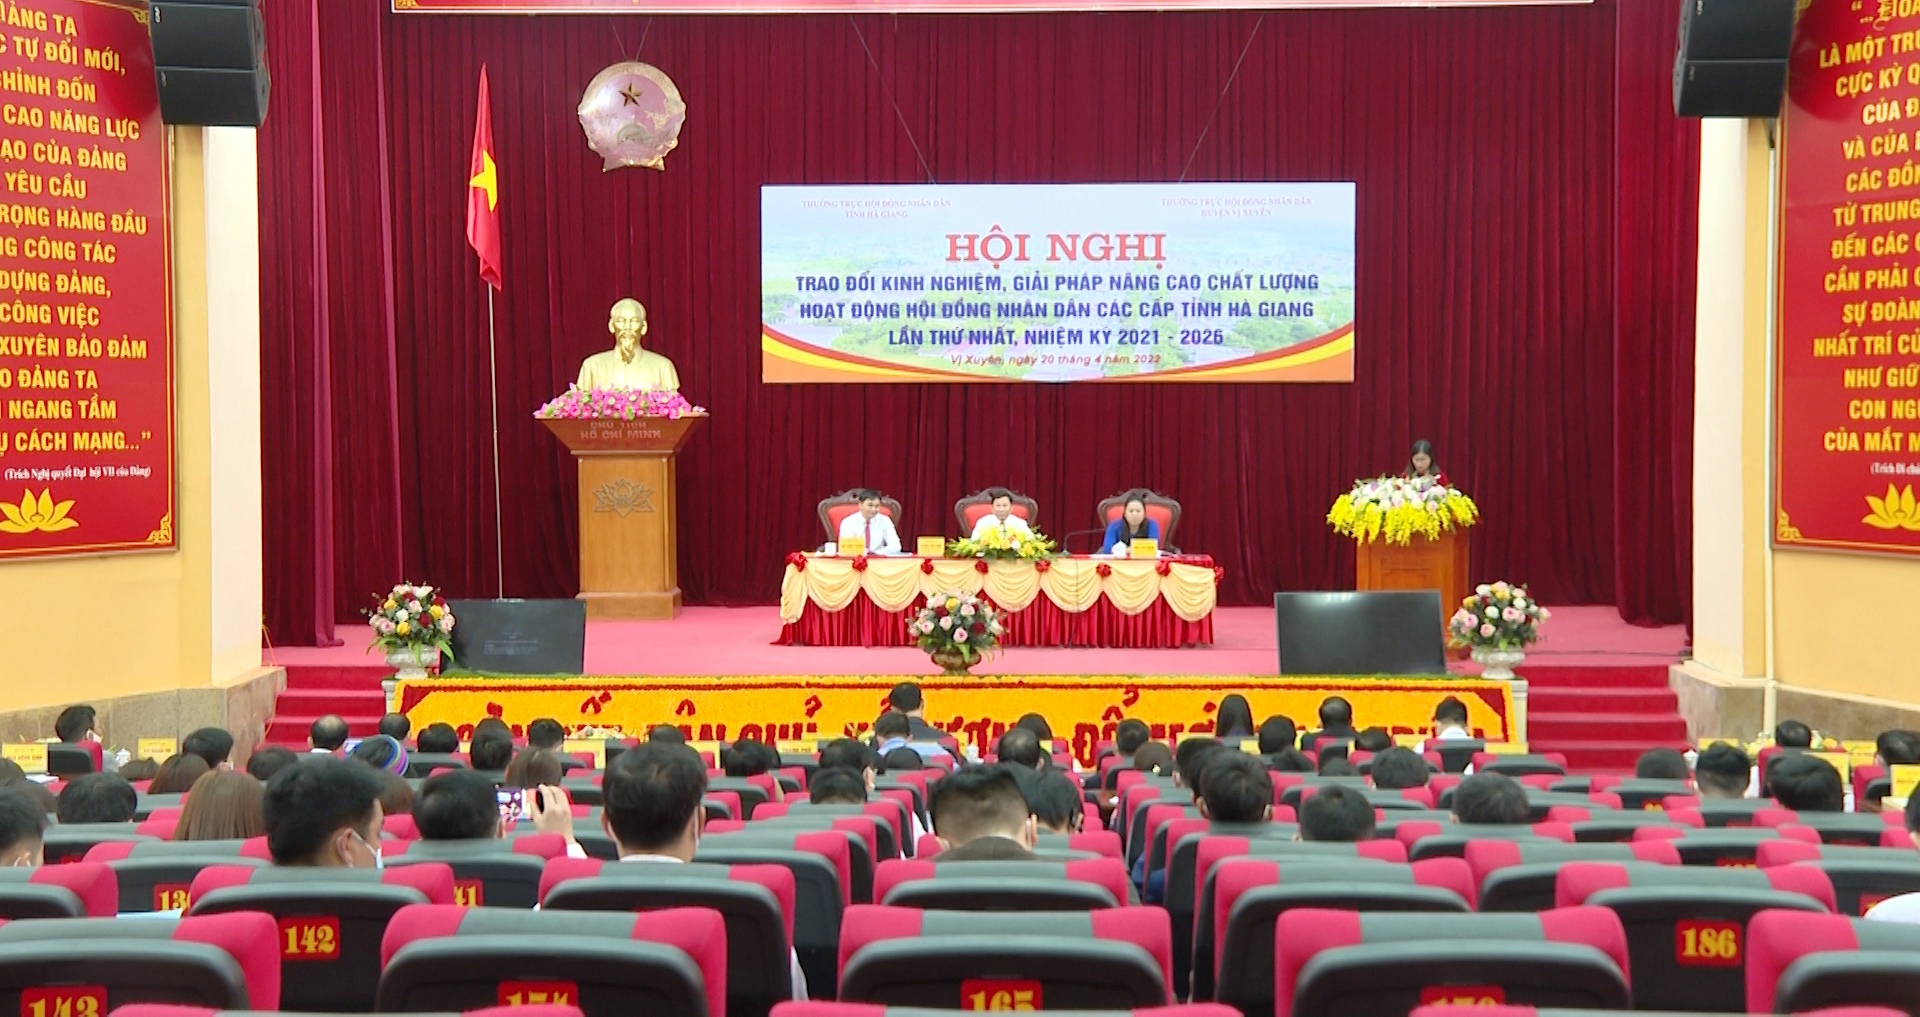 Hội nghị trao đổi kinh nghiệm, giải pháp nâng cao chất lượng hoạt động HĐND các cấp tỉnh Hà Giang